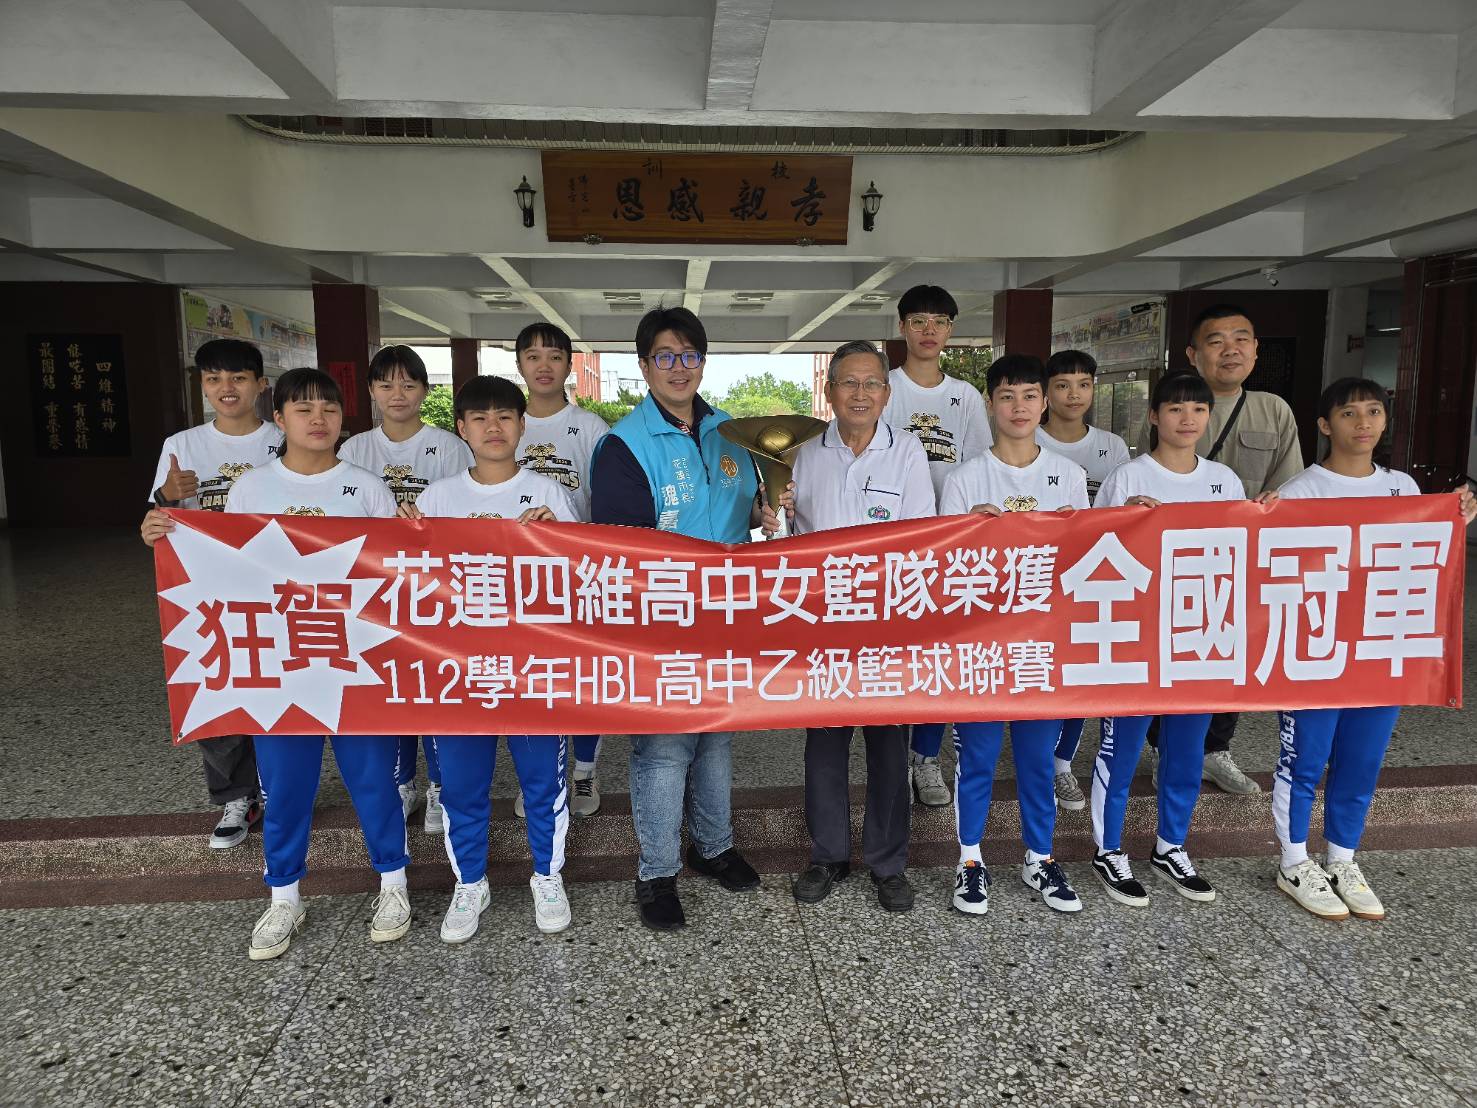 四維高中榮獲高中女球乙級聯賽全國冠軍  接受校友市長魏嘉彥表揚